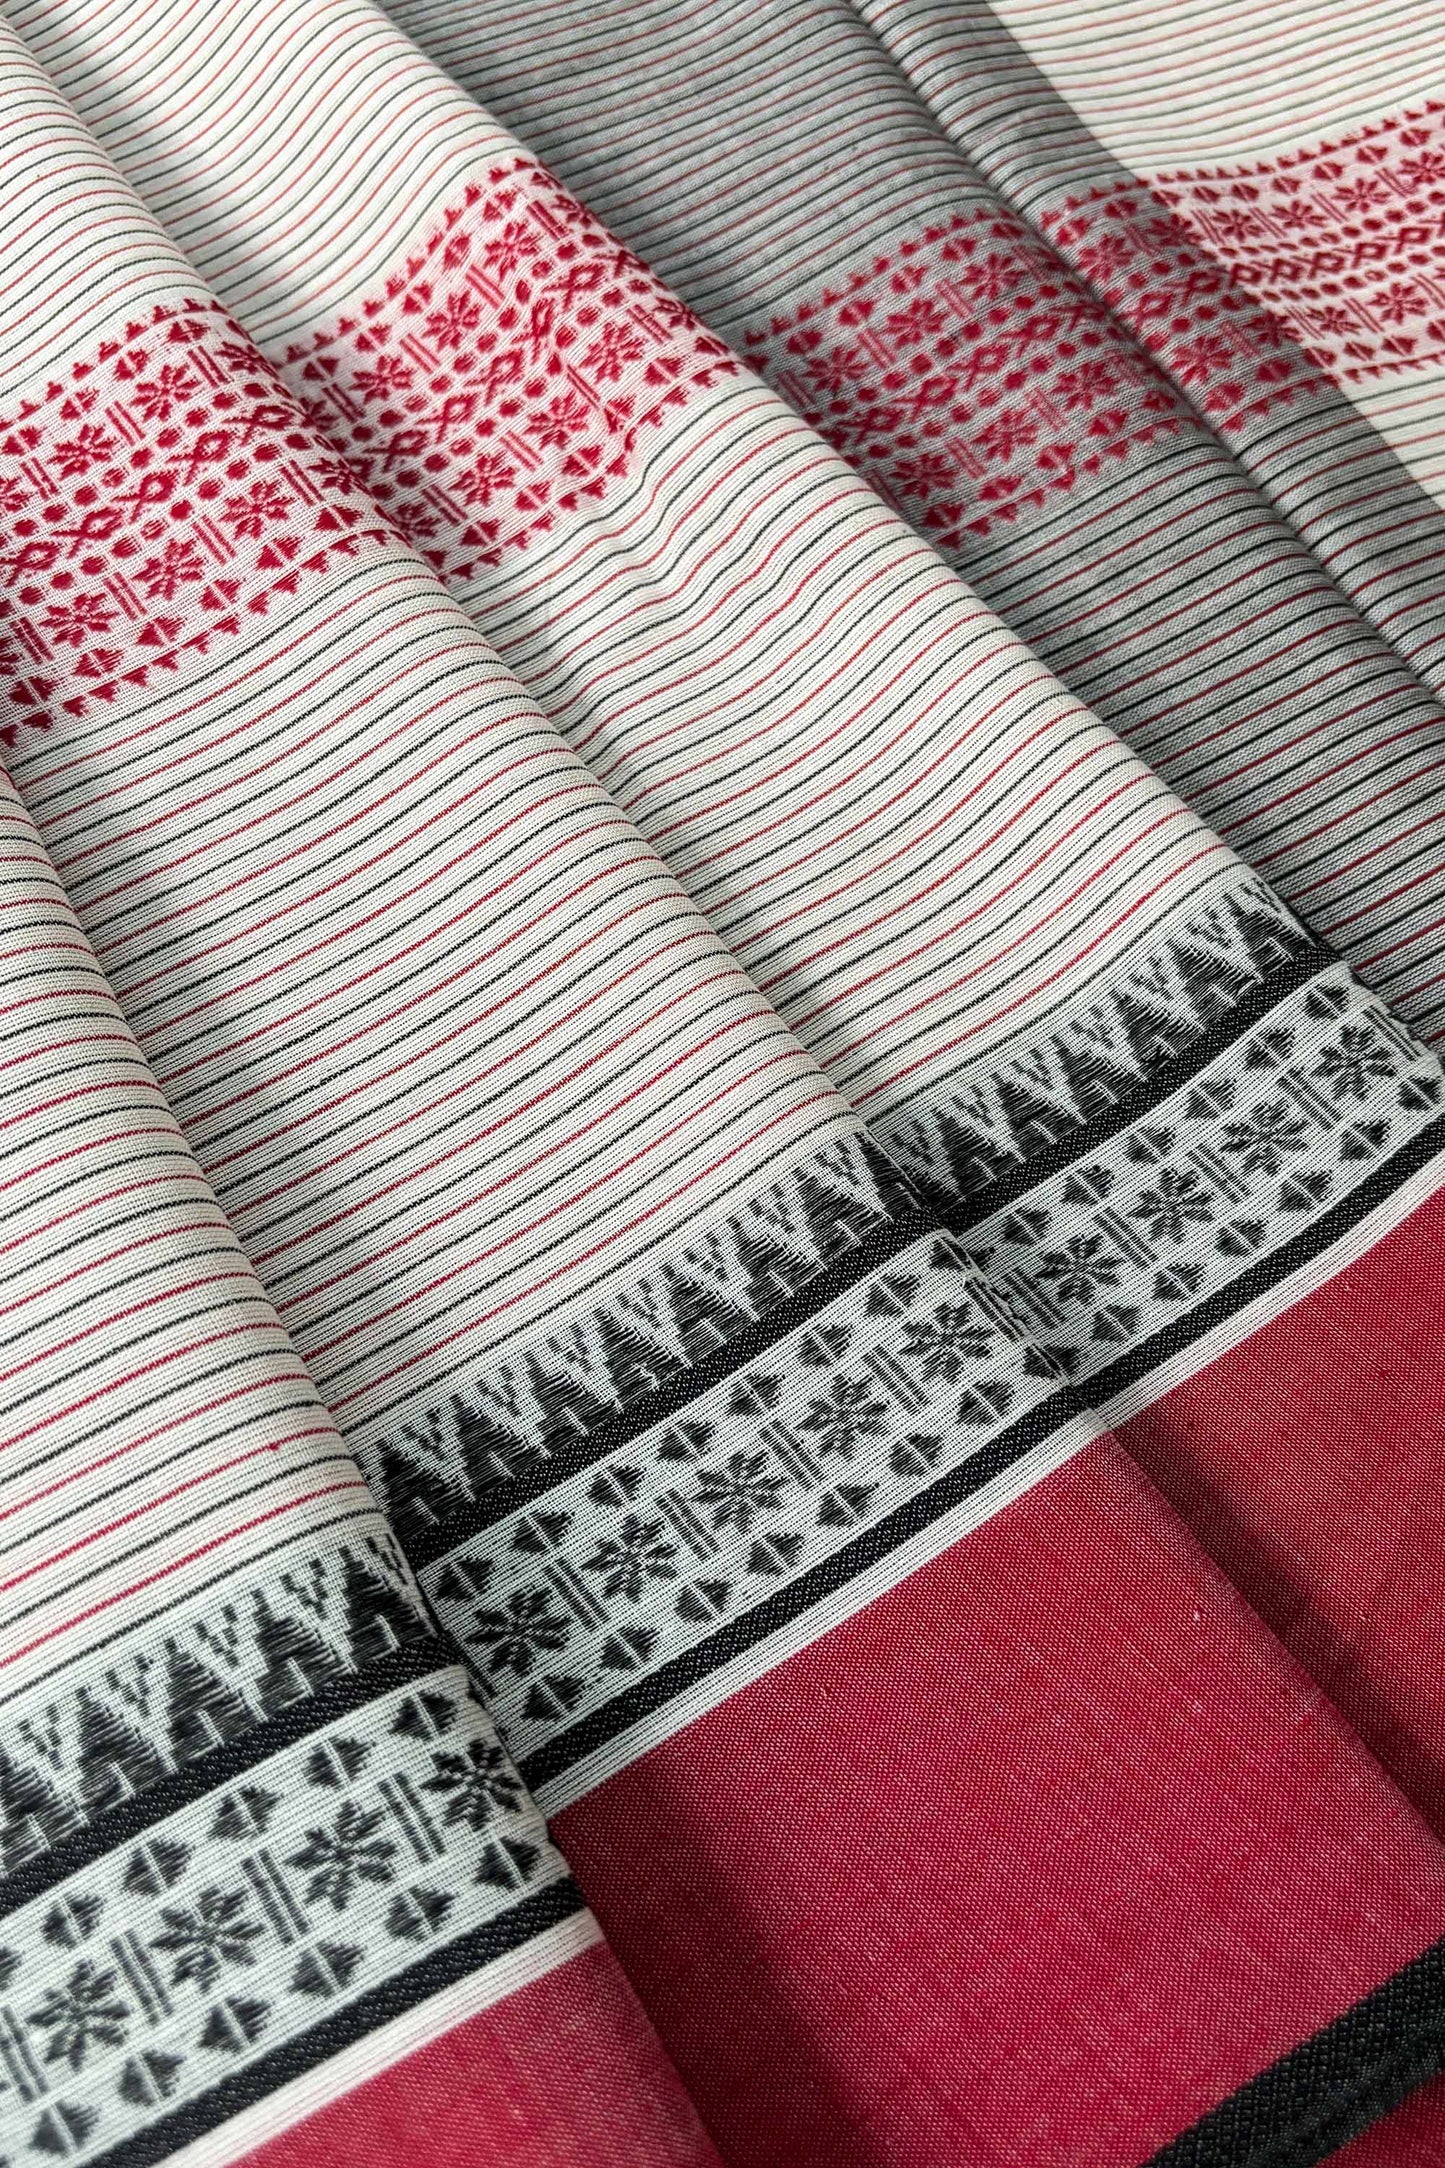 Red Black White Woven Stipes Cotton Dhaniakhali Saree